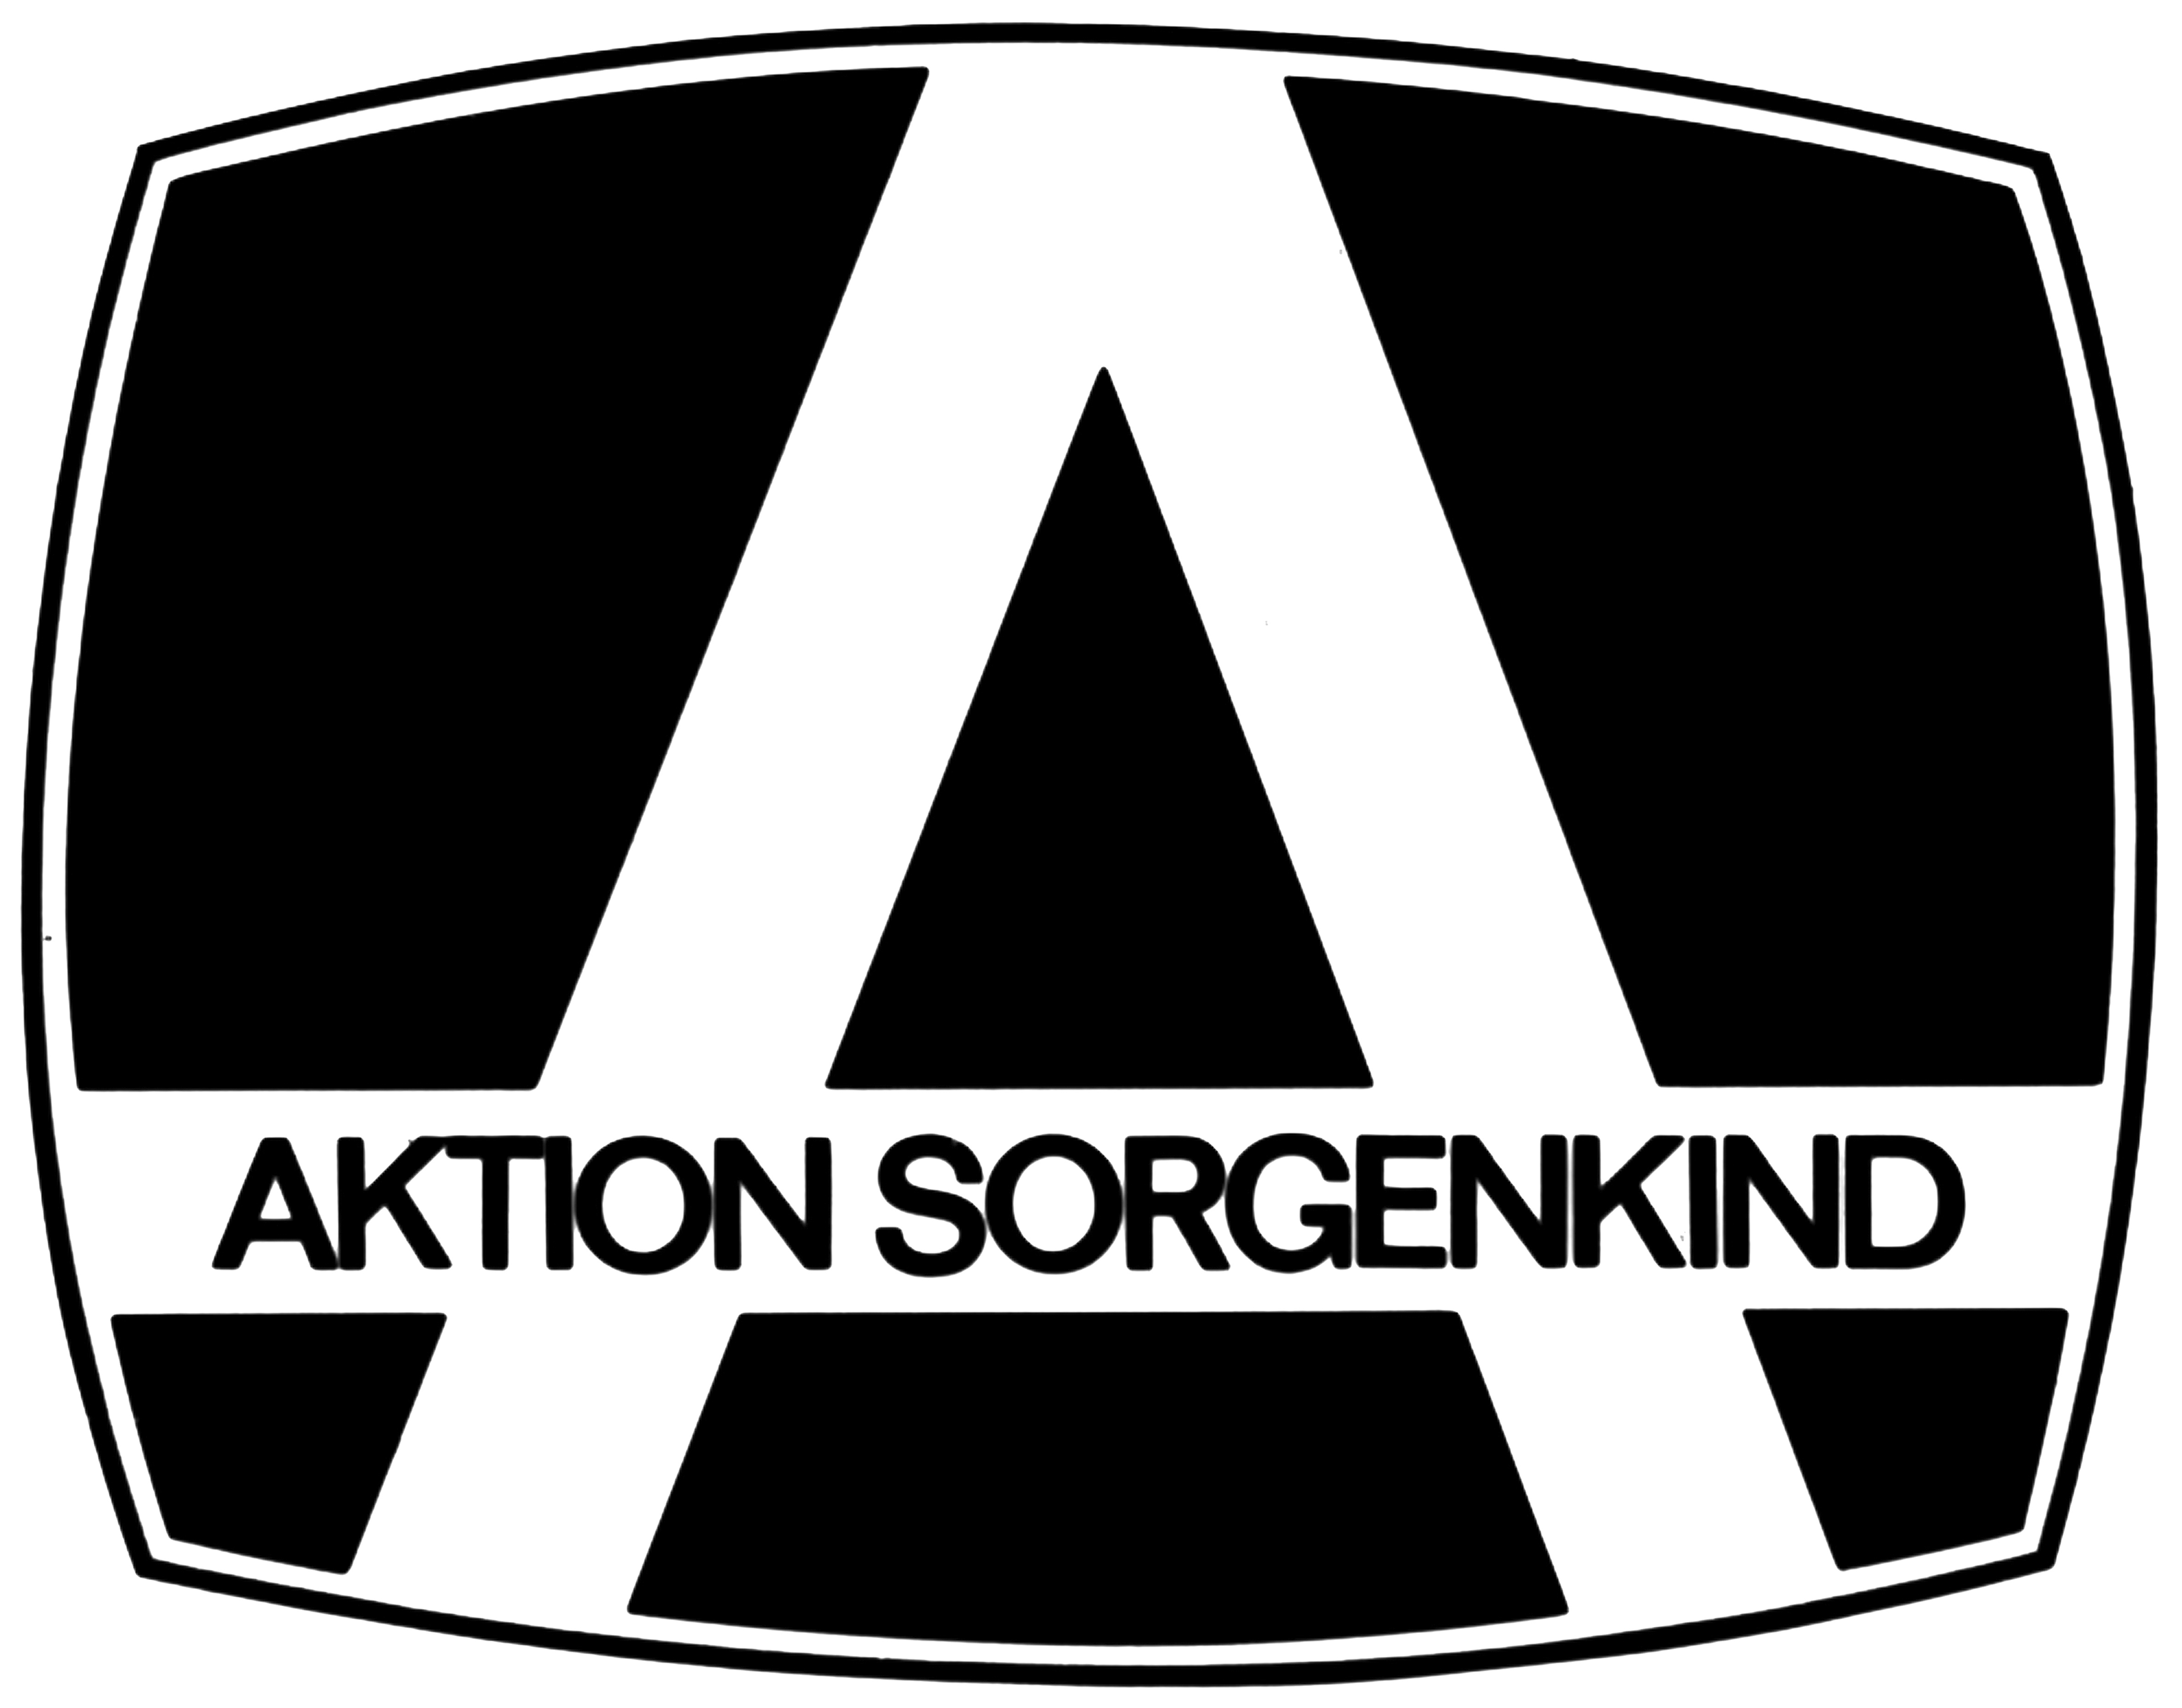 Zu sehen ist das erste Logo der Aktion Sorgenkind. Ein großes weißes A vor schwarzem Hintergrund, im Querbalken vom großen A steht Aktion Sorgenkind geschrieben.